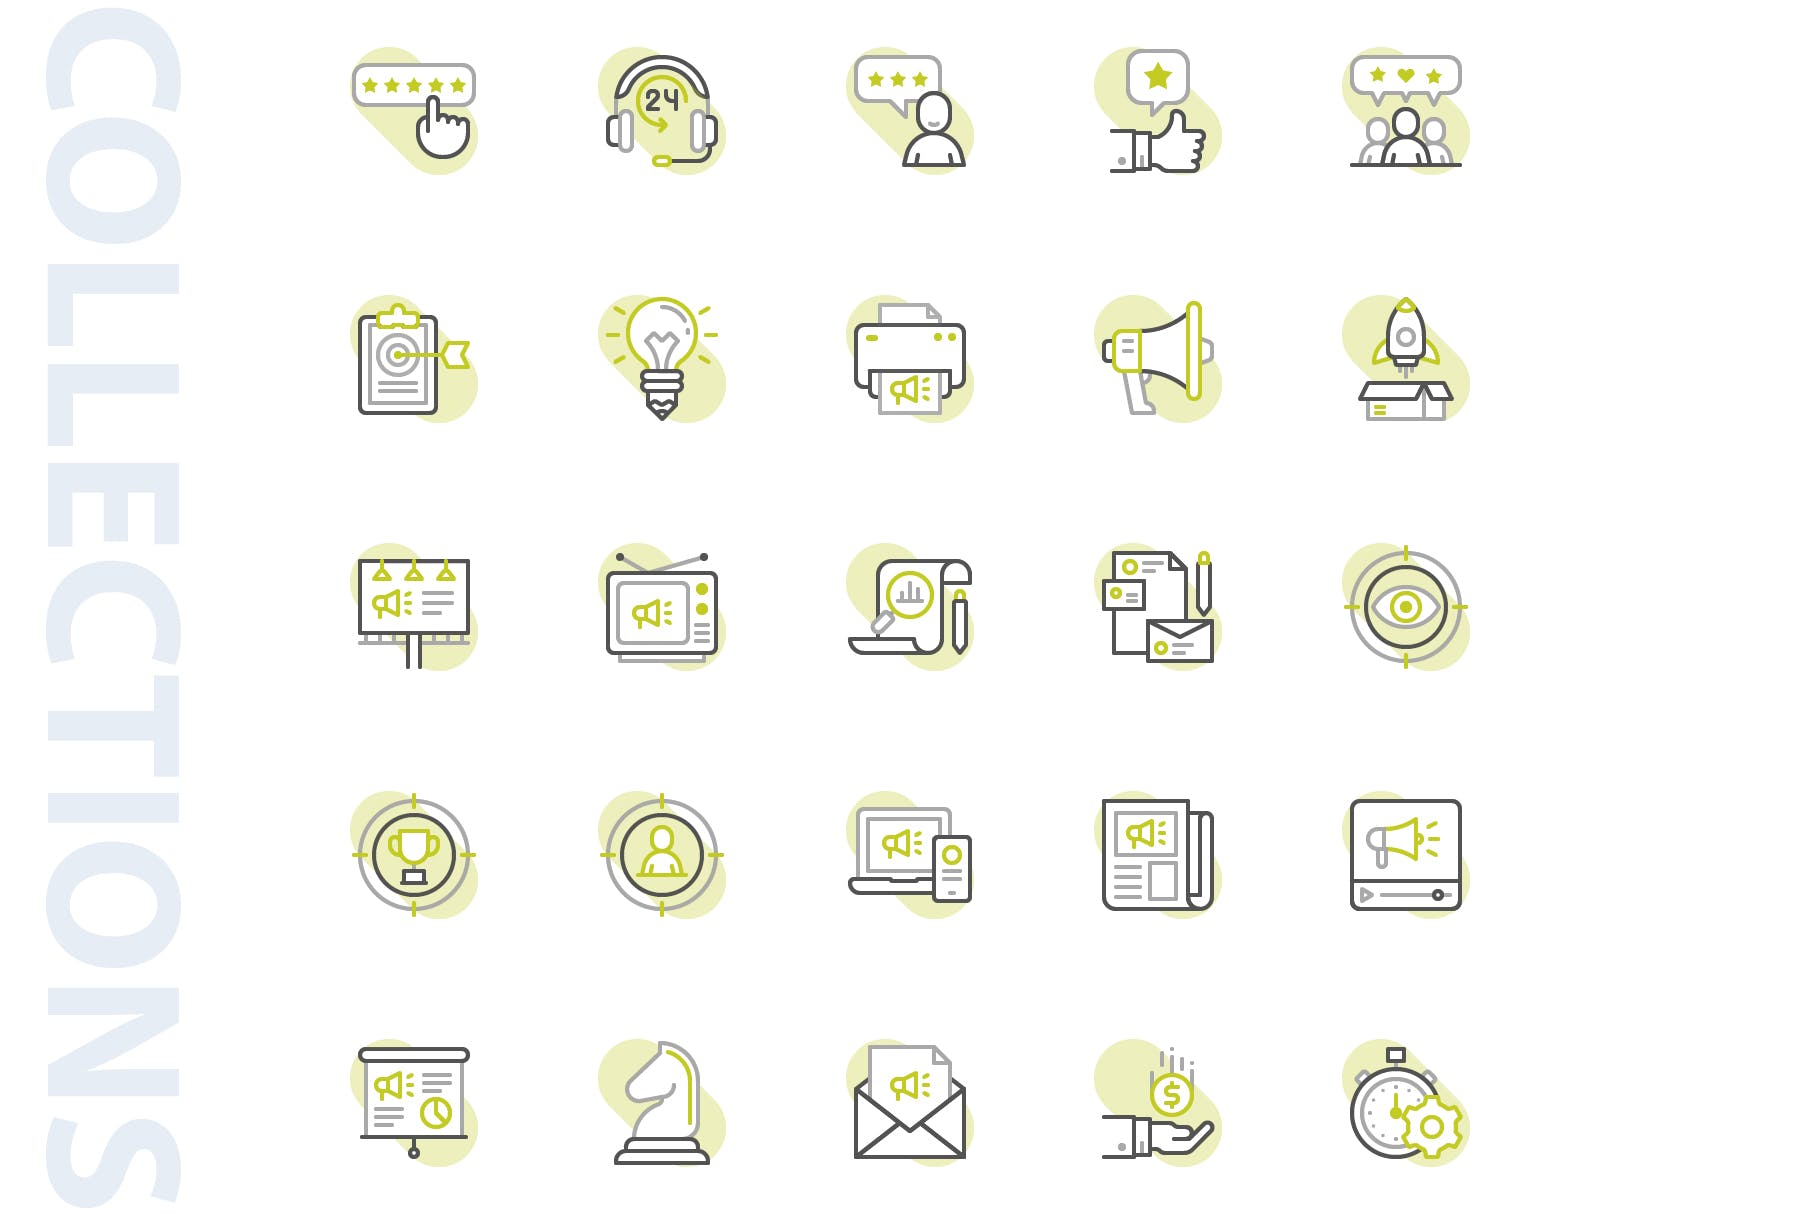 25枚市场营销主题矢量阴影蚂蚁素材精选图标 Marketing Shape Icons插图(3)